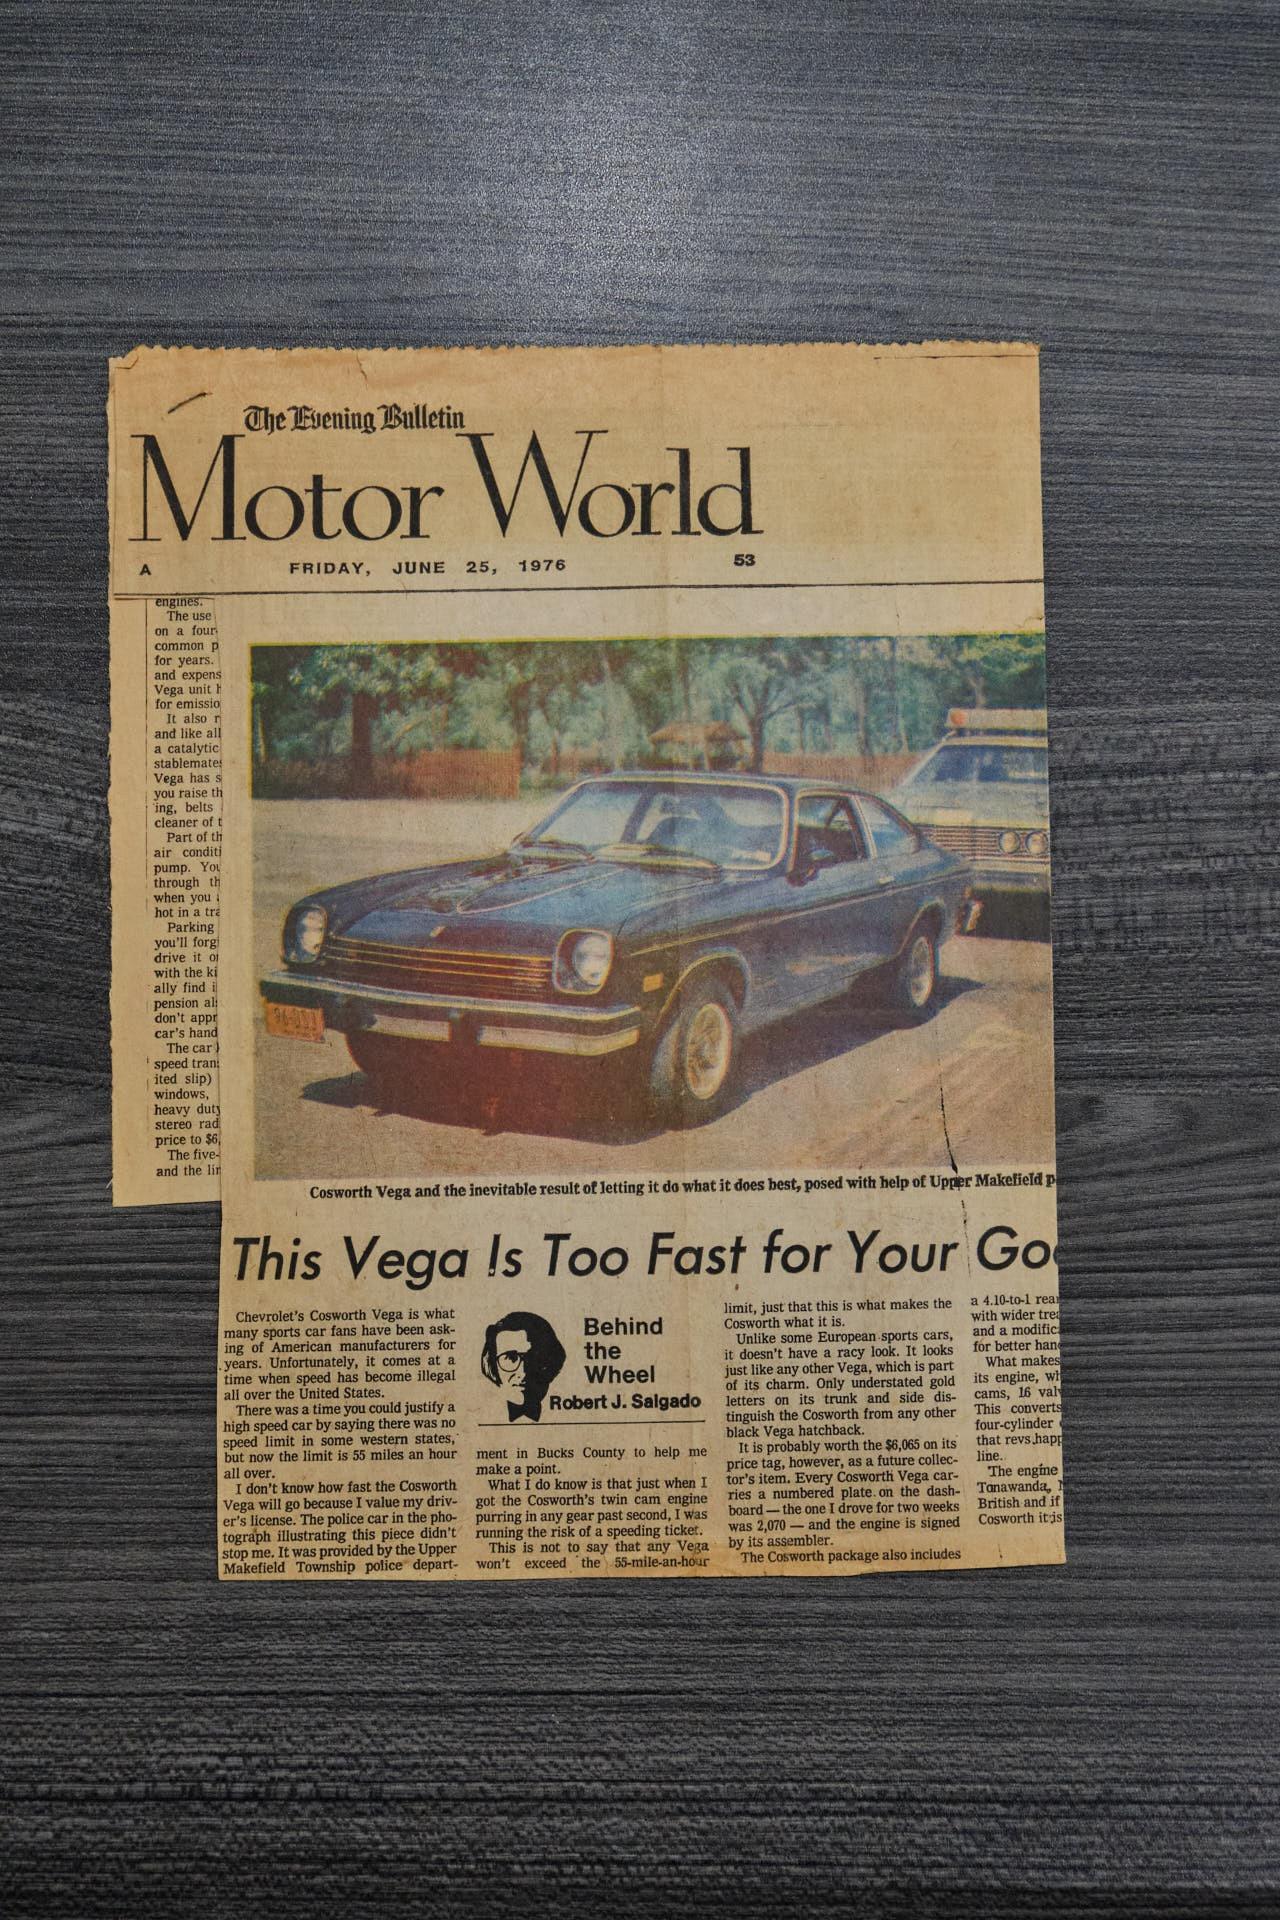 1975 Chevrolet Vega Cosworth 40